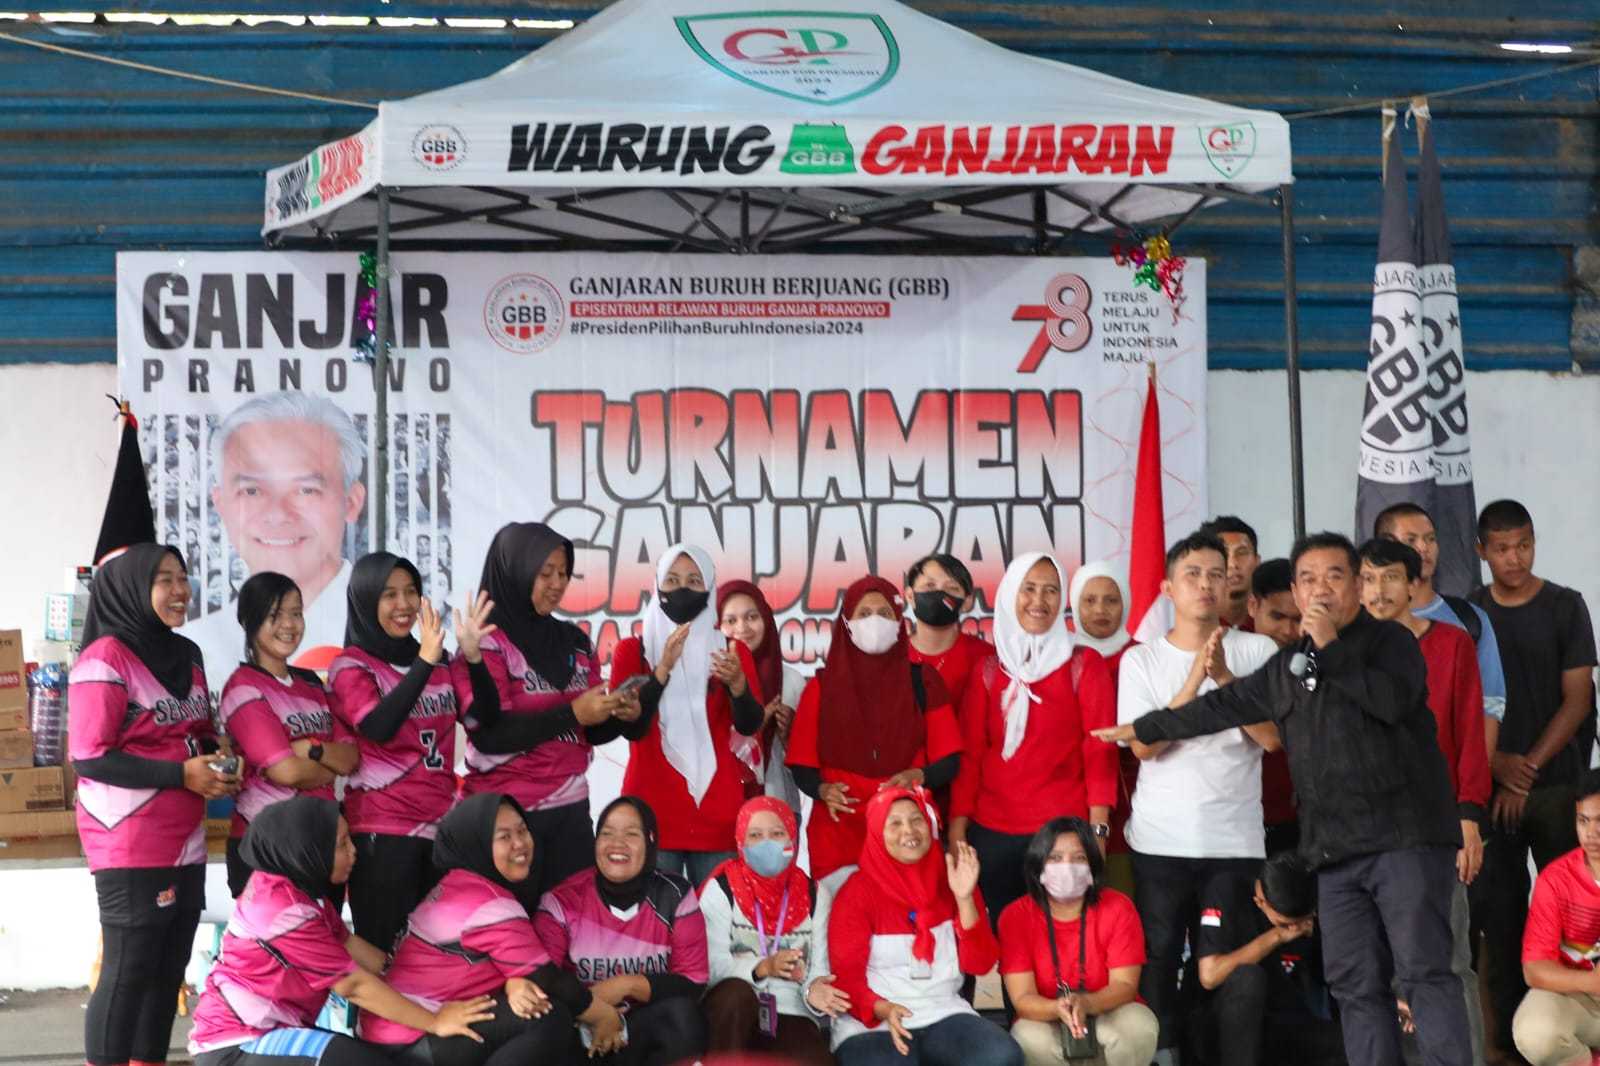 Meriahkan HUT ke-78 RI, Ganjaran Buruh Berjuang Adakan Turnamen Bola Voli di Subang 3